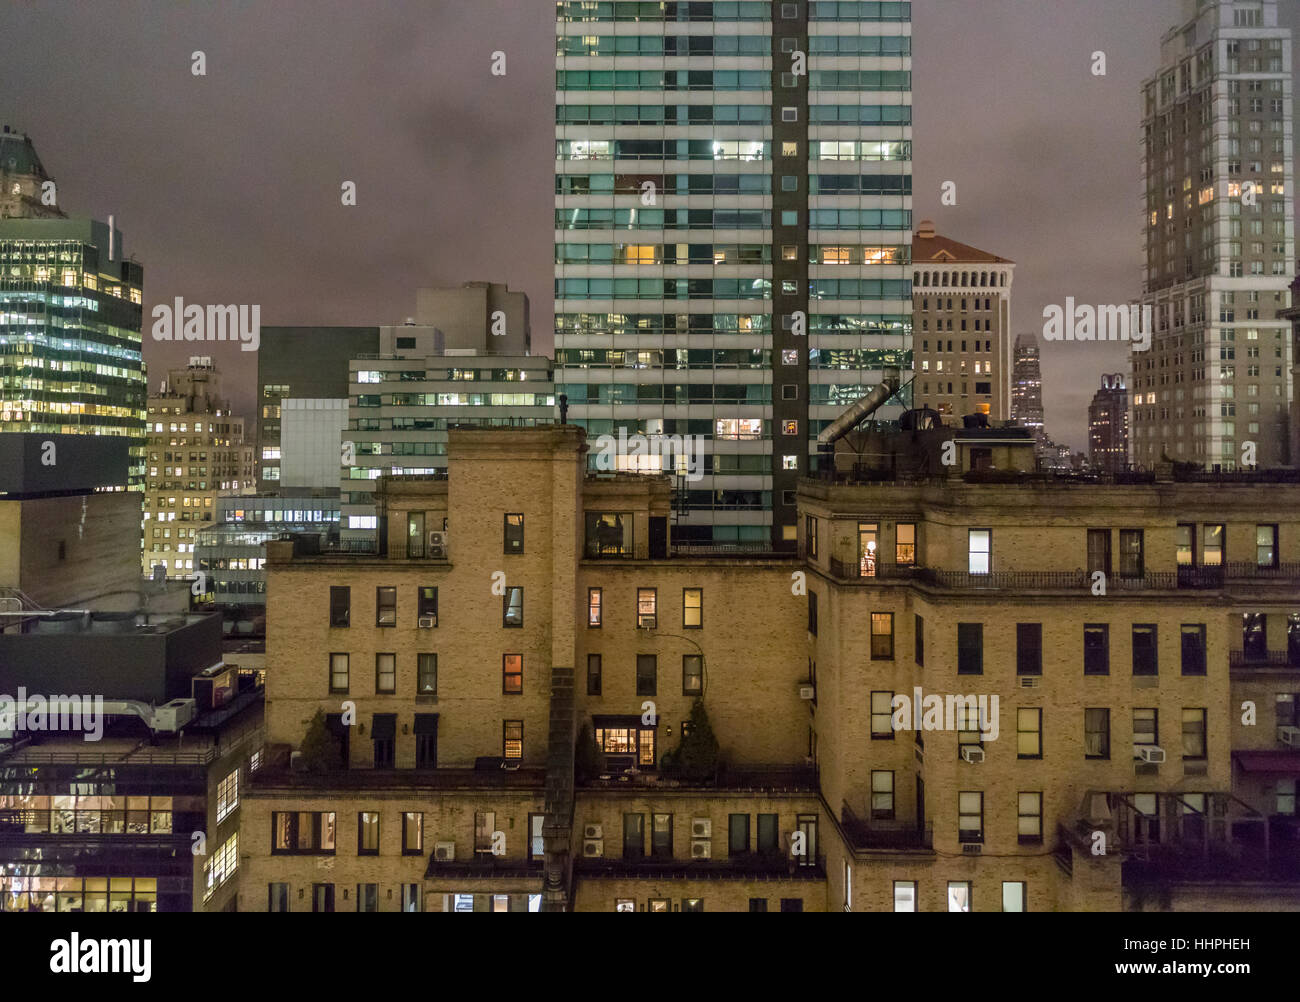 Détail de l'image NEW YORK skyline au centre ville de Manhattan qui comprend des bureaux et des immeubles dans la nuit Banque D'Images